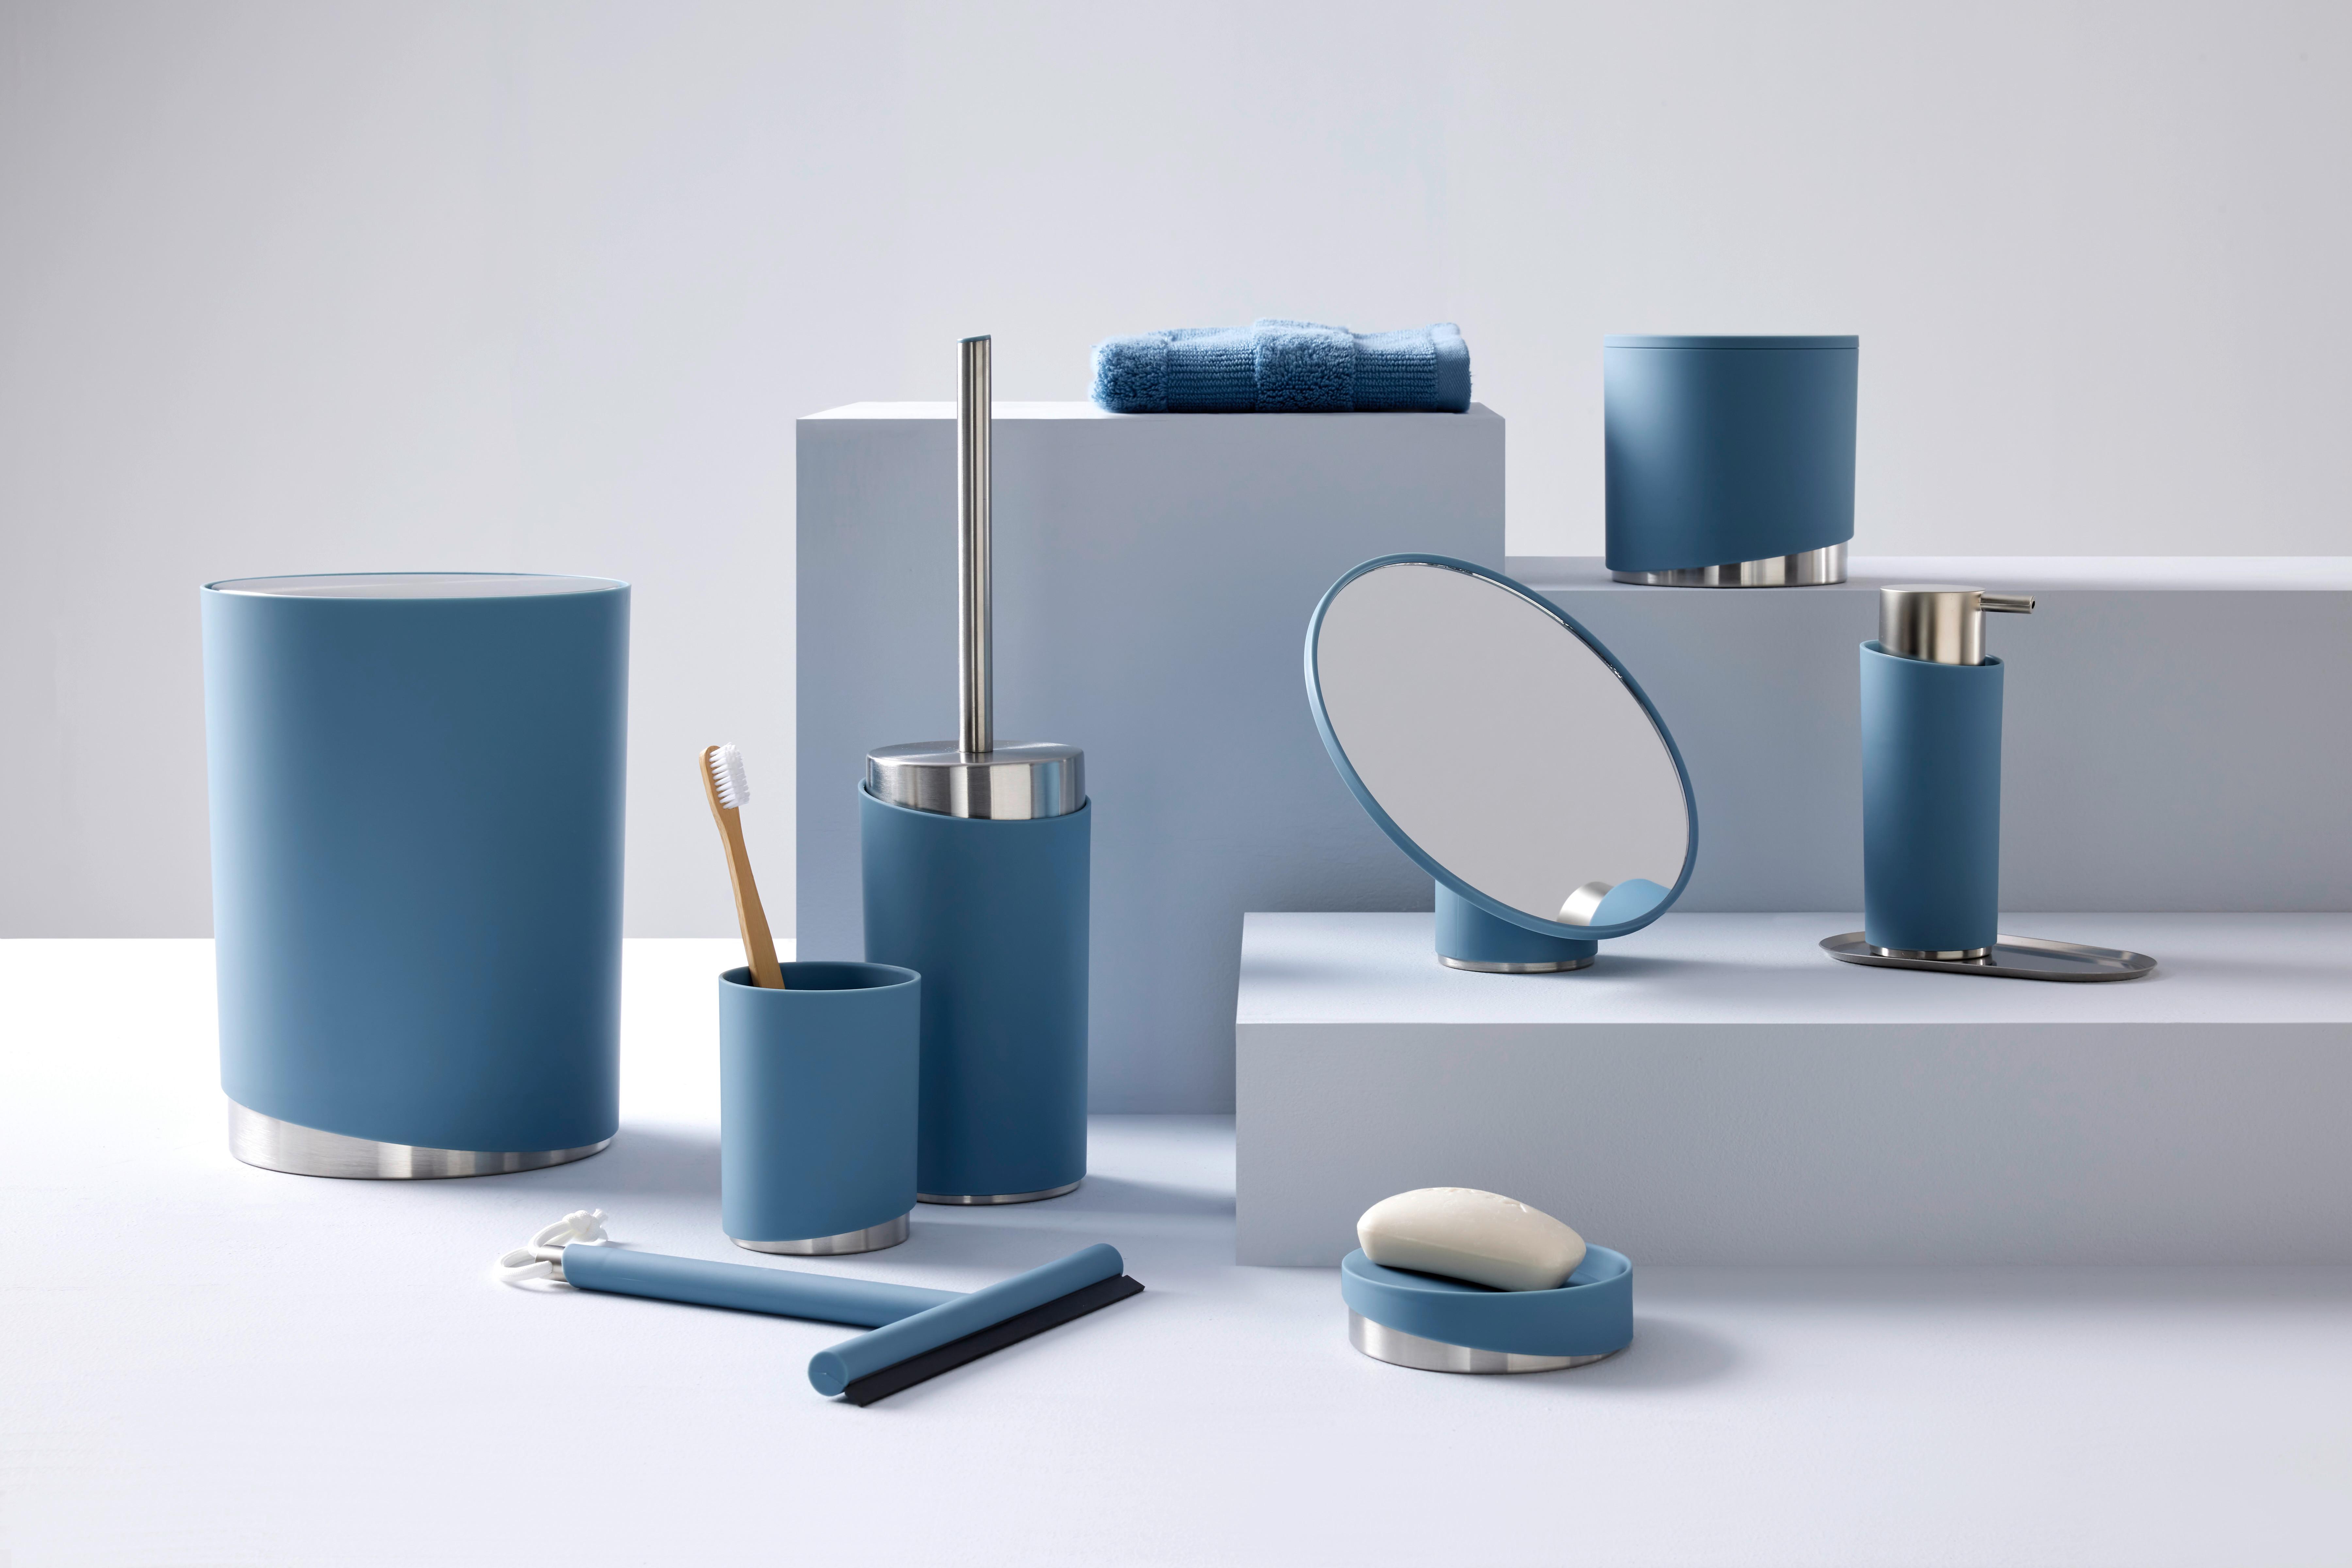 Koš Na Kosmetické Potřeby Chris, 5l - modrá, Moderní, kov/plast (19,05/25,4cm) - Premium Living